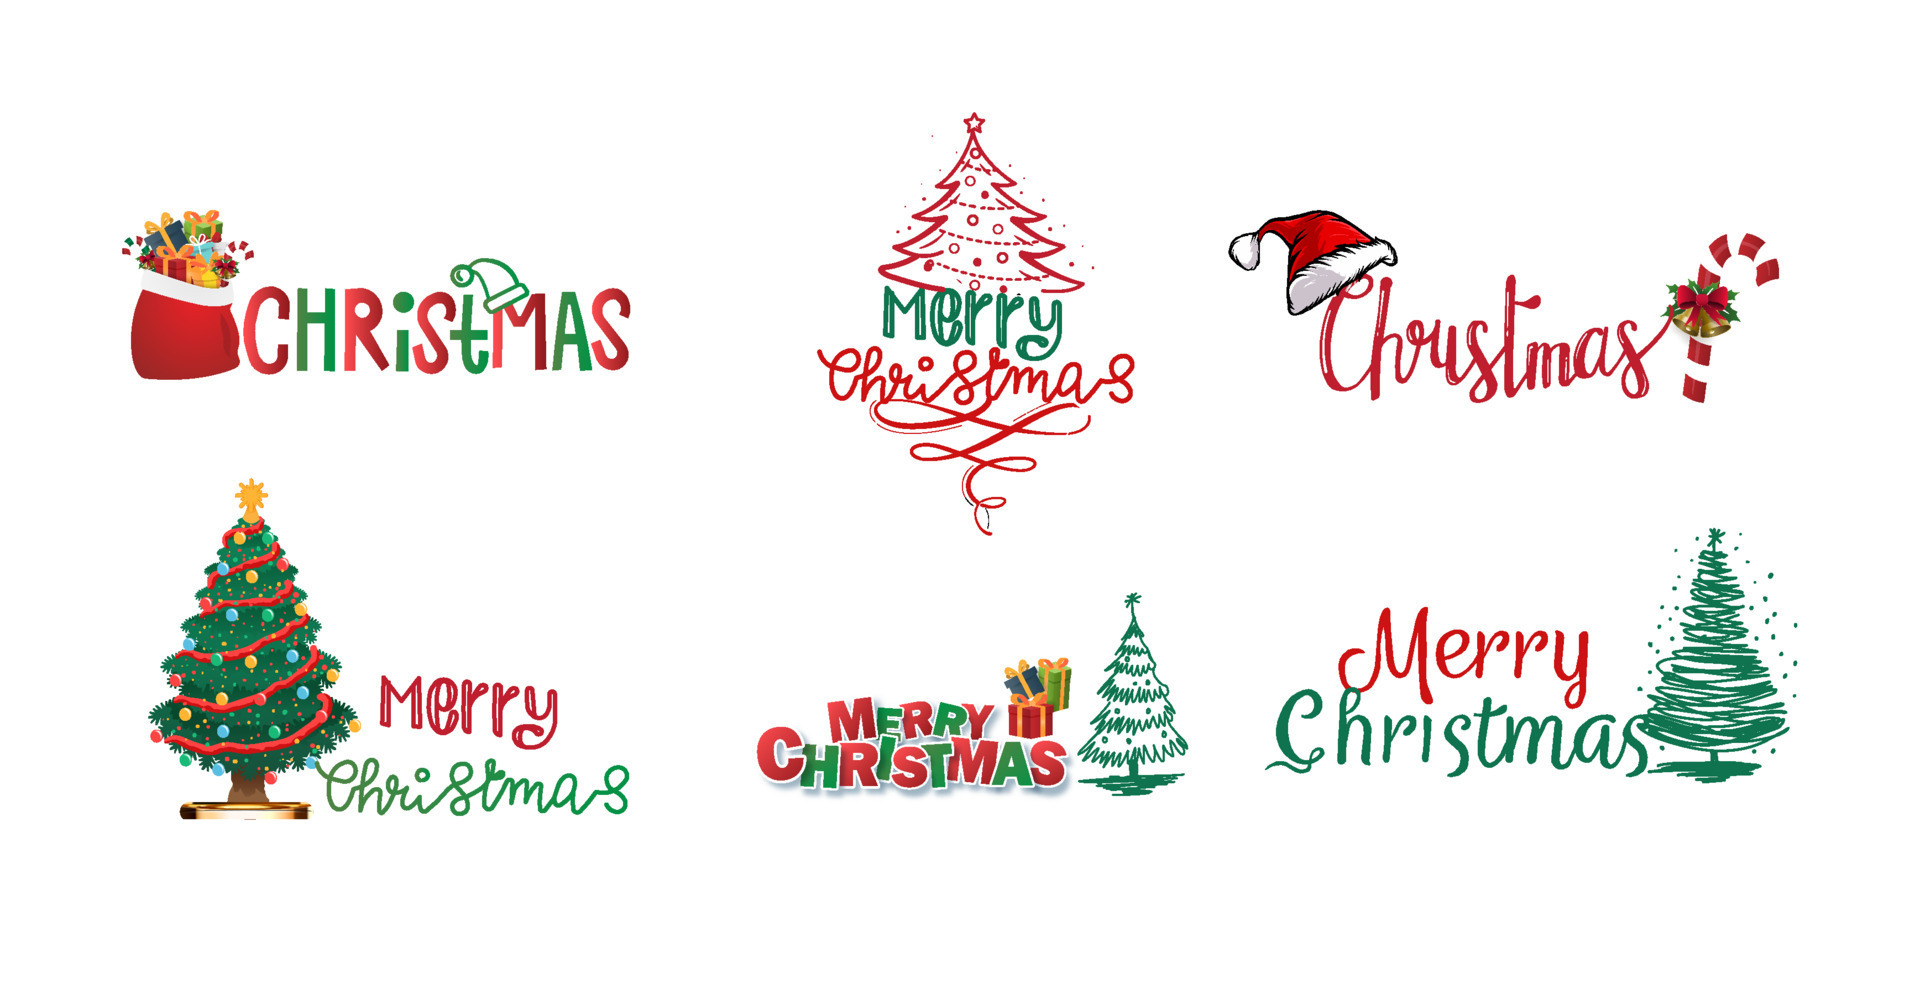 aantrekken lied Niet ingewikkeld Merry Christmas Sticker Vector Art, Icons, and Graphics for Free Download